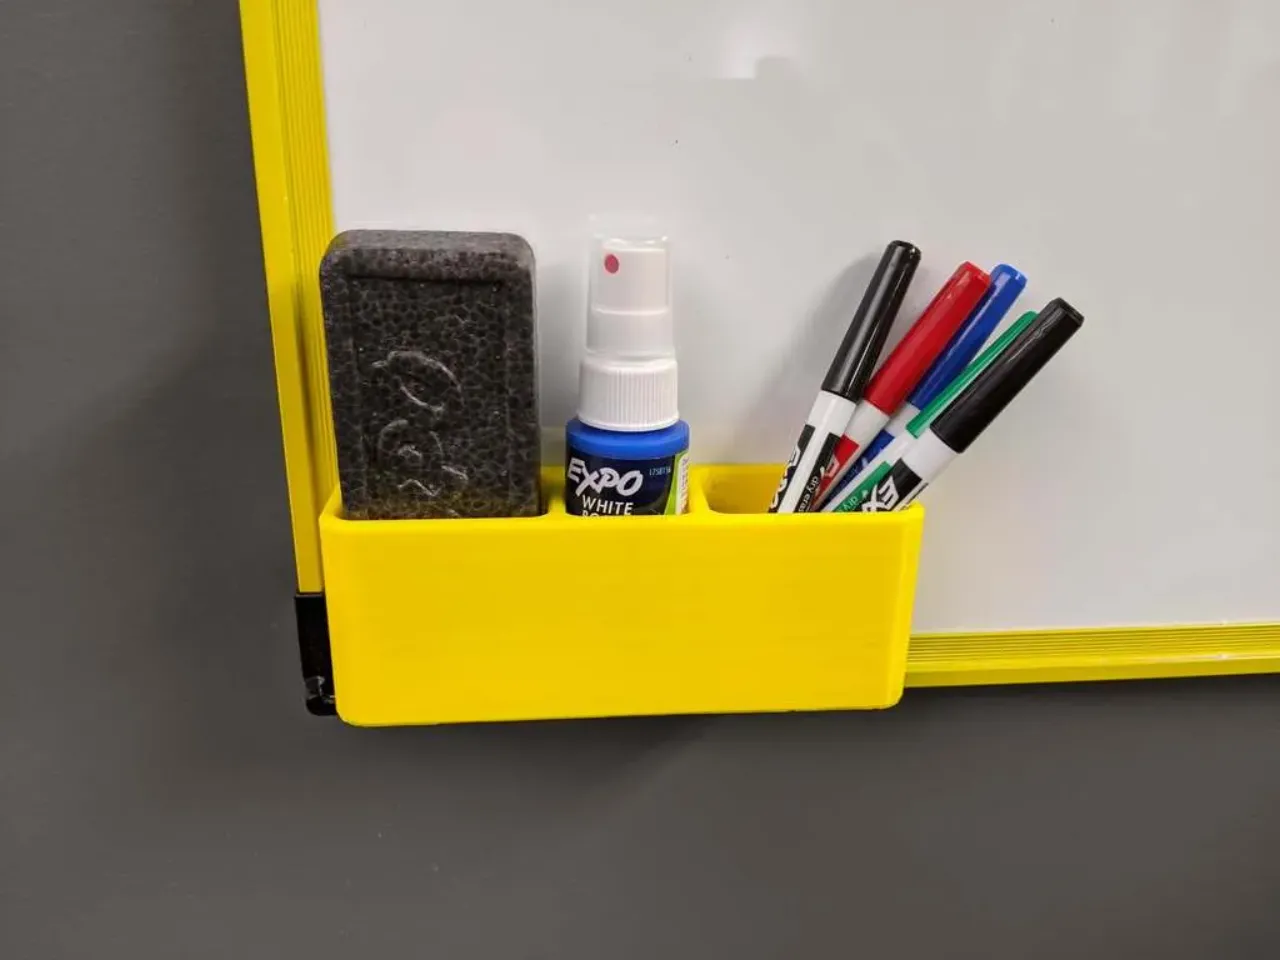 Dry Erase Marker Holder, Board Marker and Eraser Holder Shelf - White